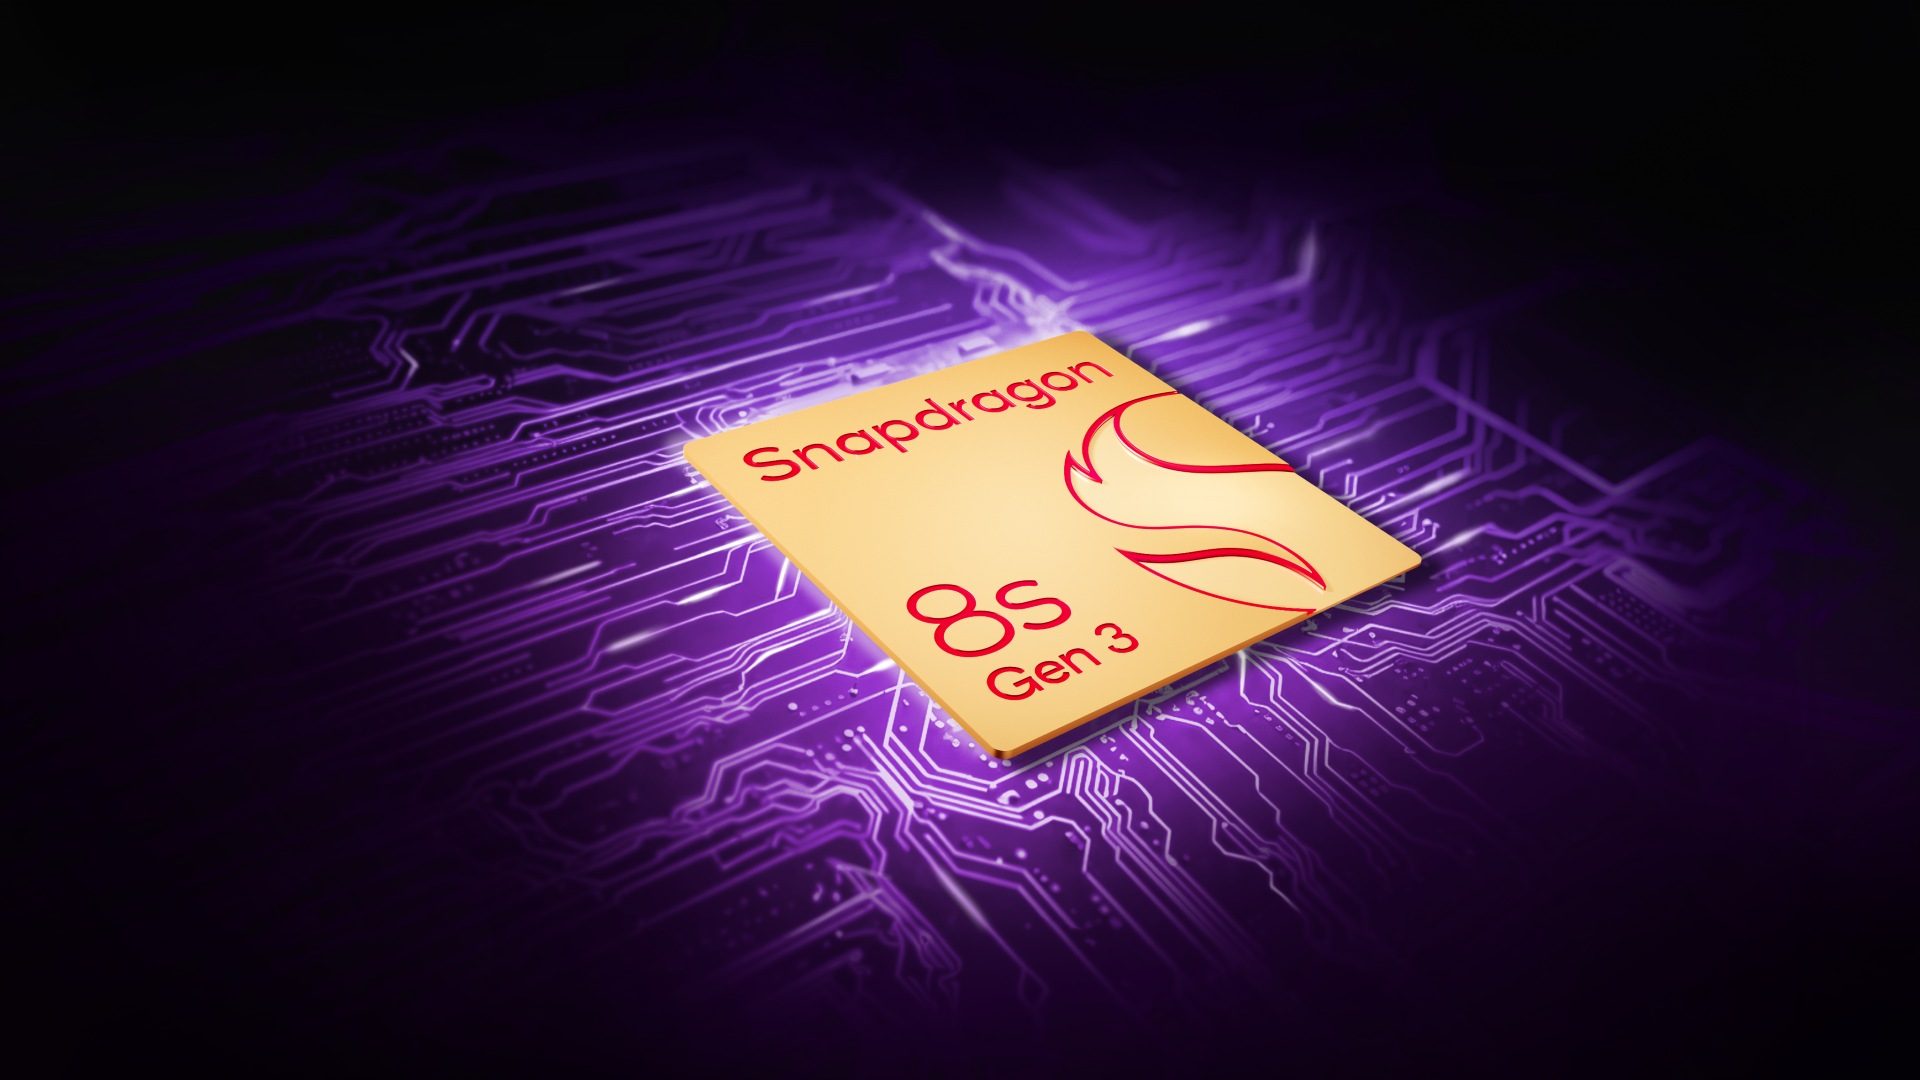 Grafik zeigt Quadrat mit Aufschrift Snapdragon 8s Gen 3 auf lilafarbenem Untergrund